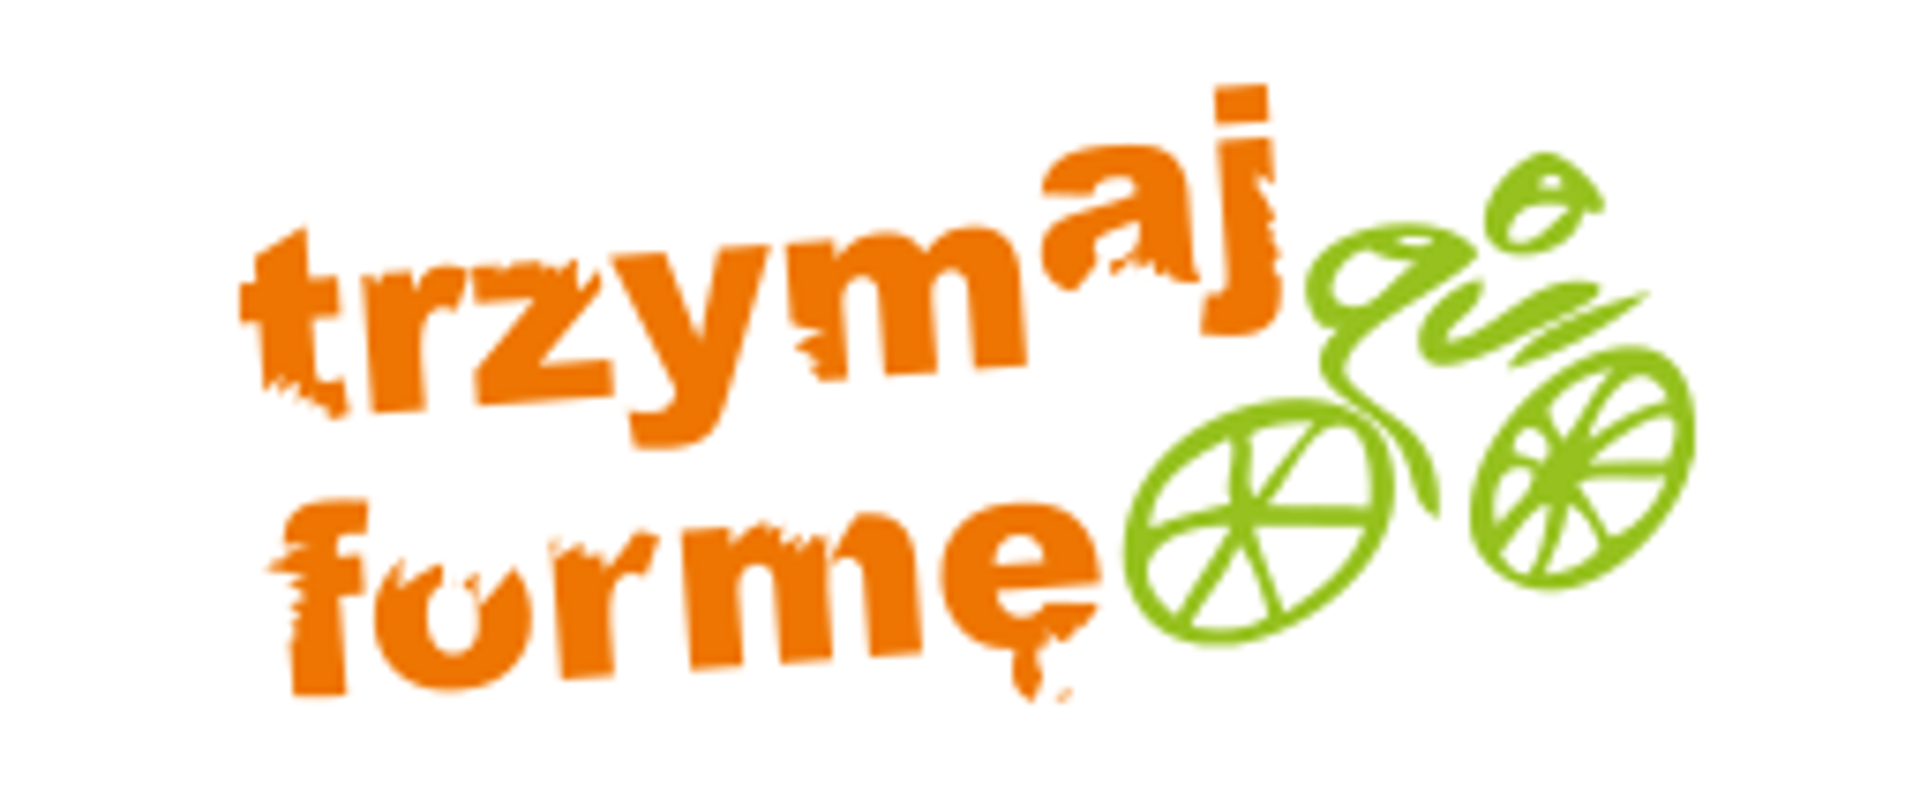 Logotyp kampanii zdrowego stylu życia. Na białym tle pomarańczowy napis: "Trzymaj formę". Obok zielona grafika przypominająca rower.